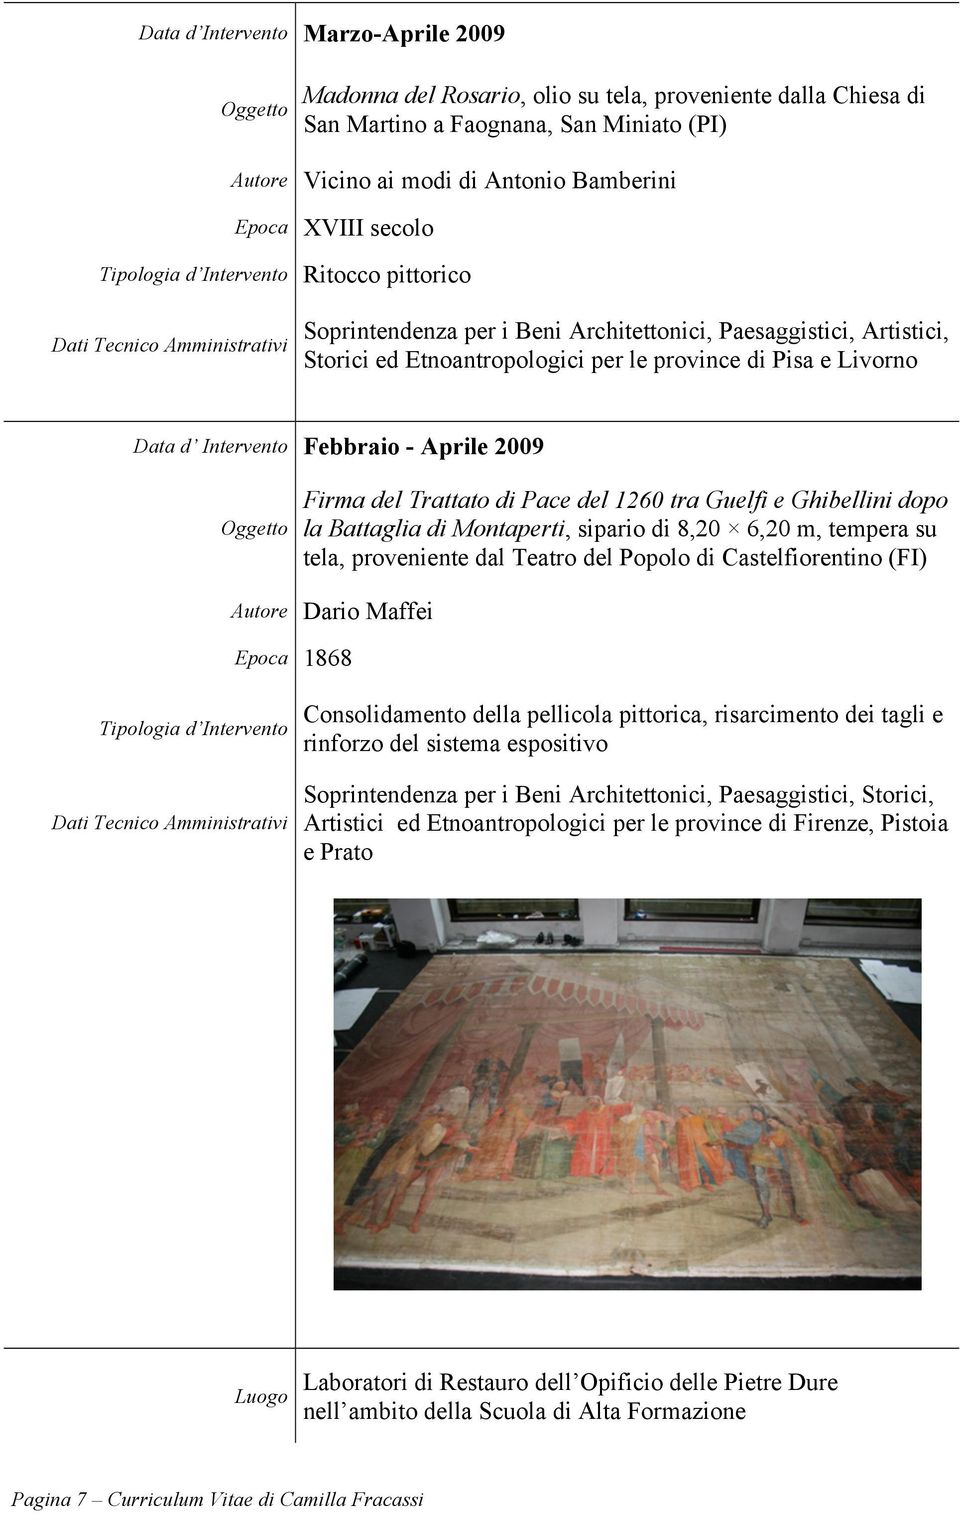 Firma del Trattato di Pace del 1260 tra Guelfi e Ghibellini dopo la Battaglia di Montaperti, sipario di 8,20 6,20 m, tempera su tela, proveniente dal Teatro del Popolo di Castelfiorentino (FI) Autore